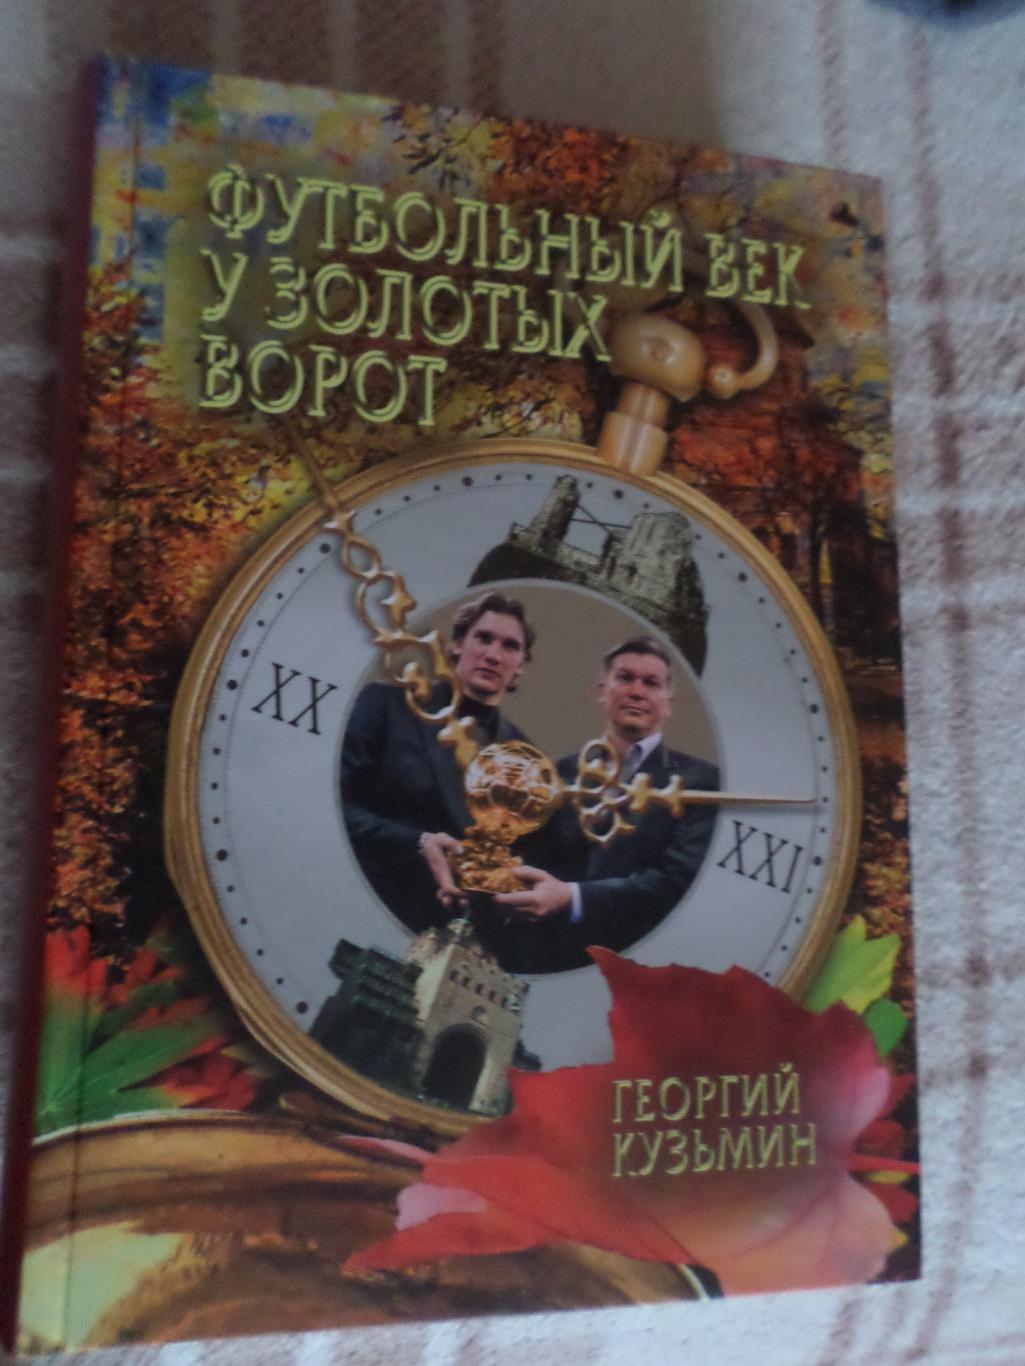 Кузьмин - Футбольный век у Золотых ворот Киев 2011 г